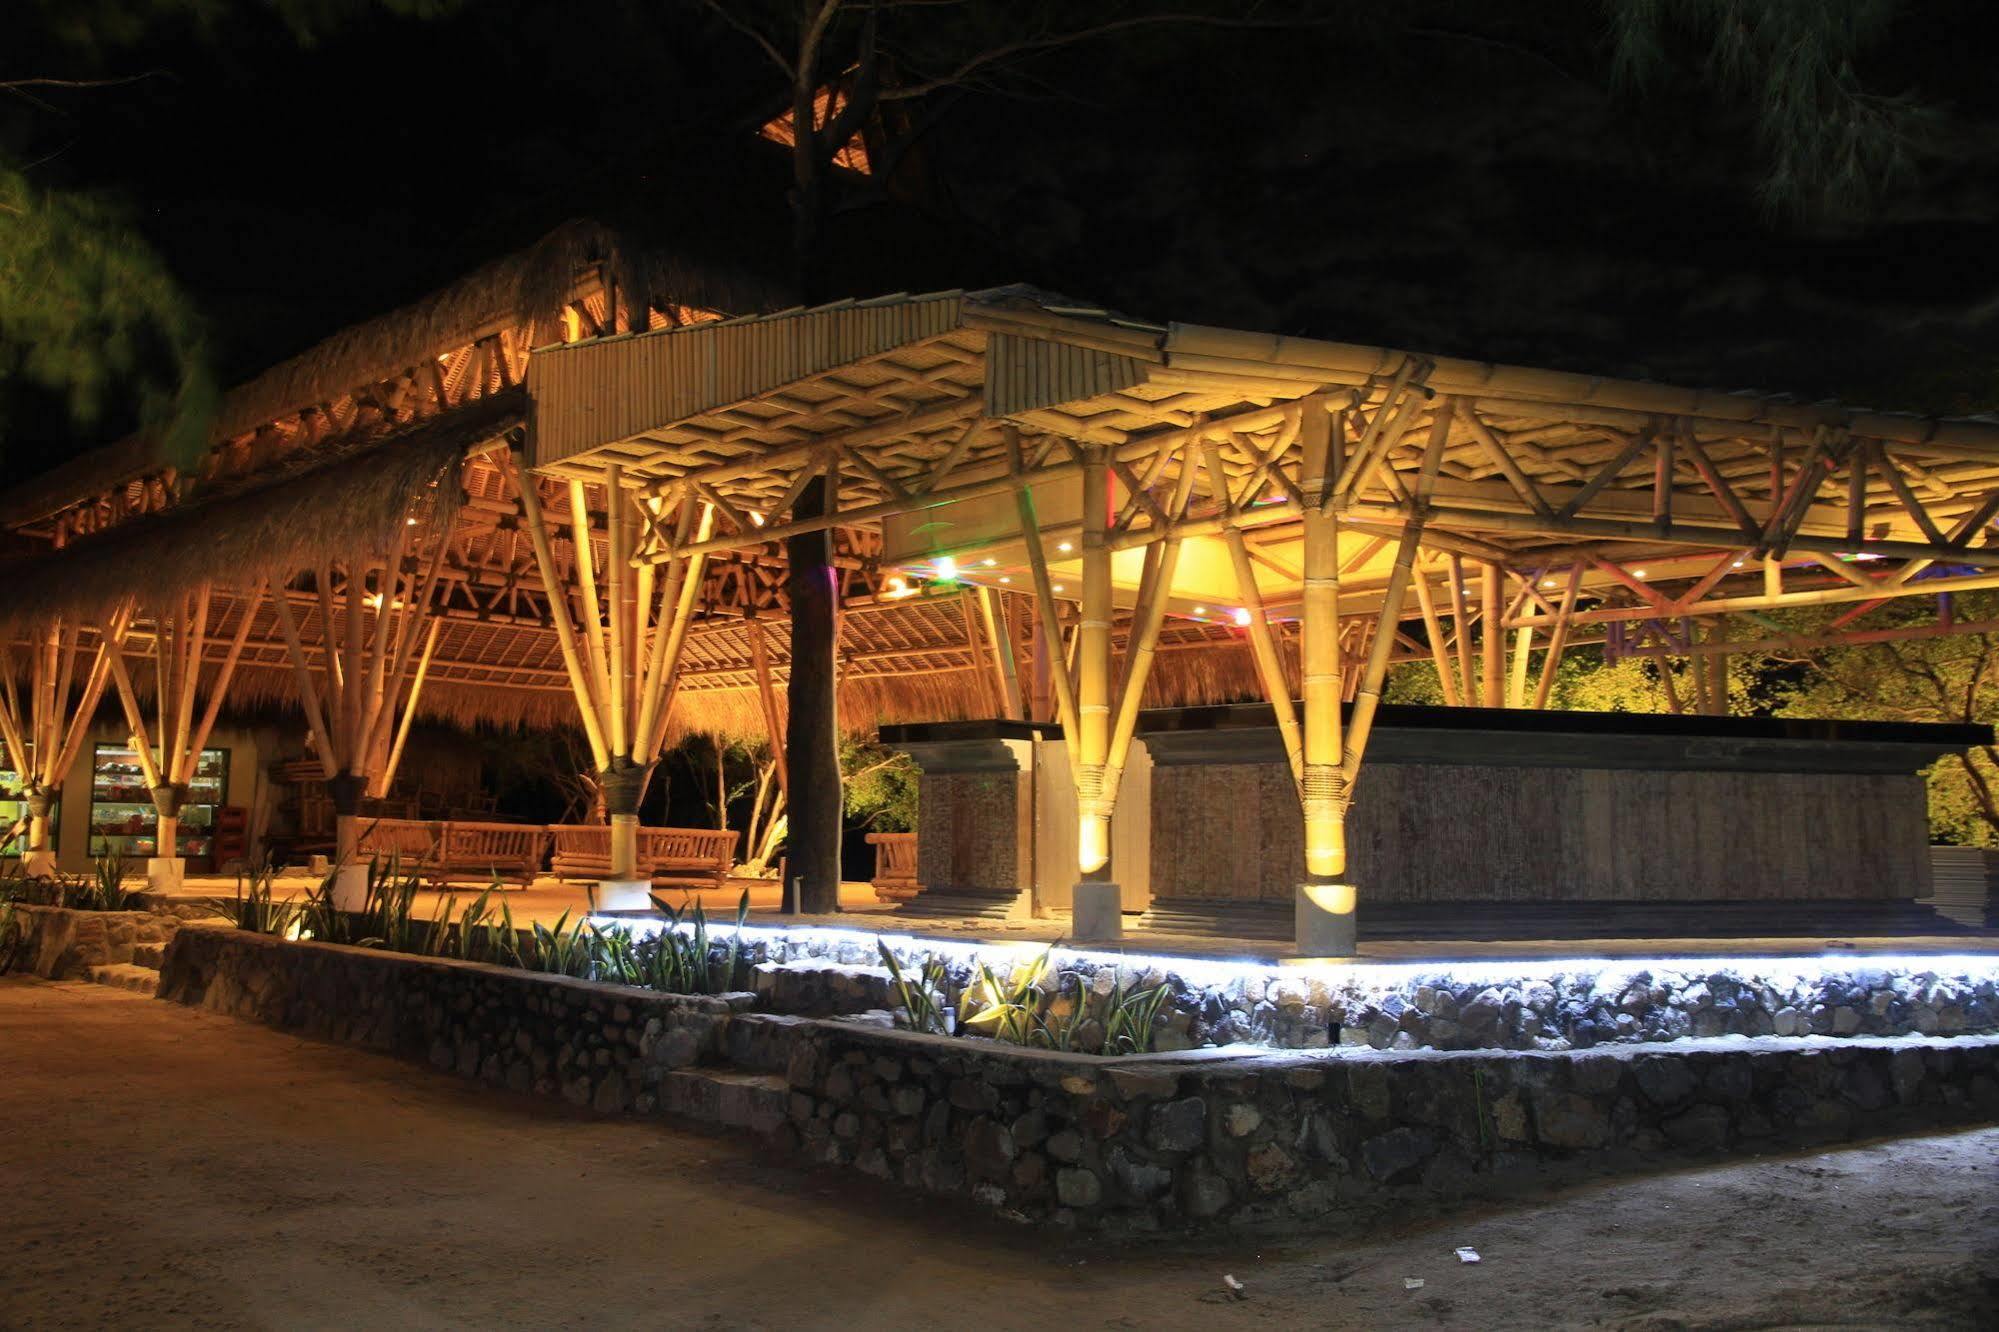 Vamana Resort - Chse Certified Gili Trawangan Buitenkant foto